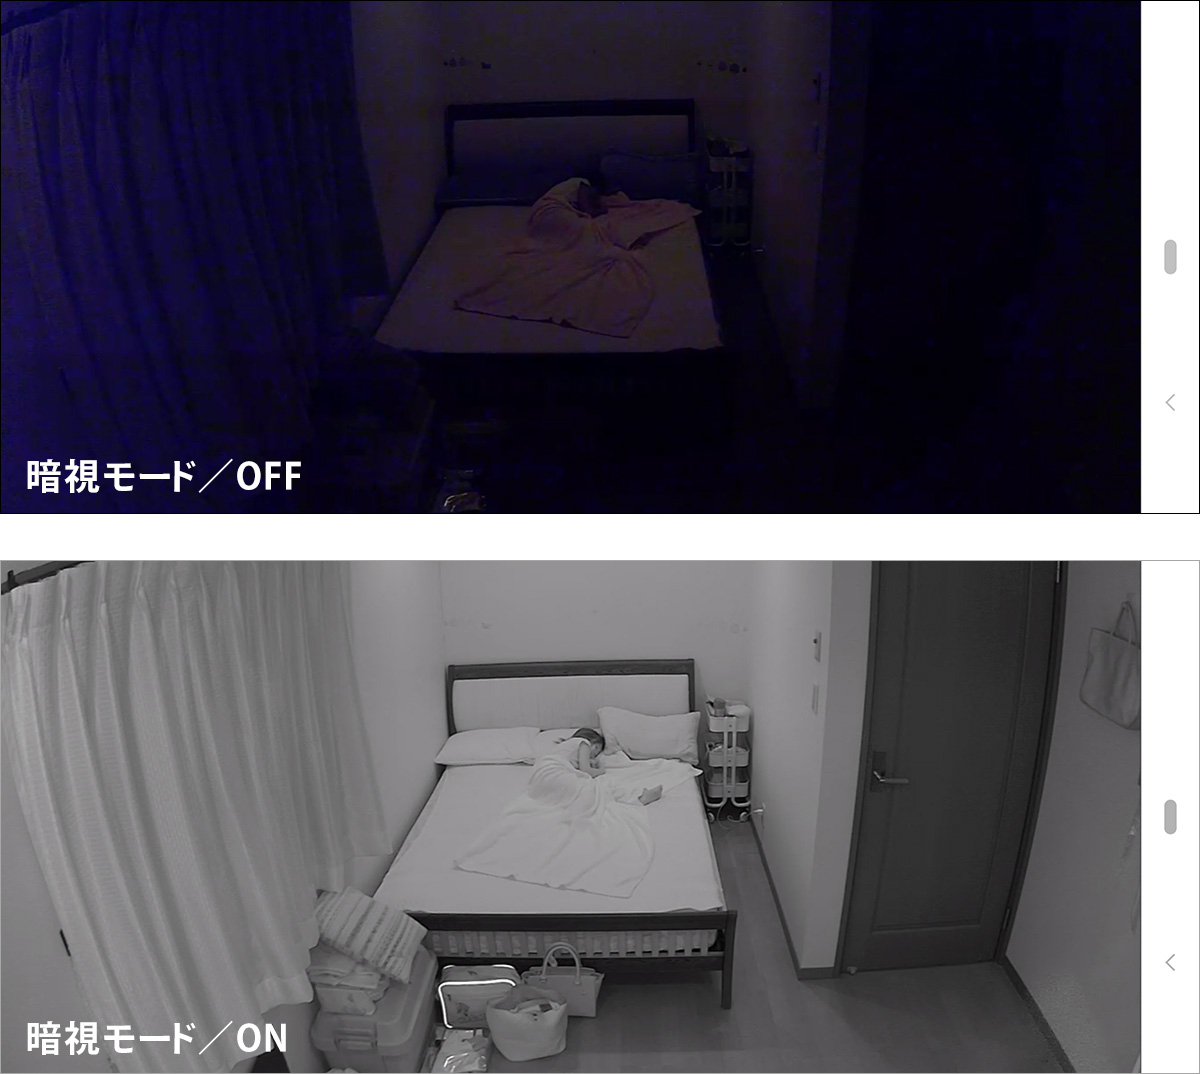 上：暗視モードがOFFの映像　下：暗視モードがONの映像　赤外線撮影のため白黒になります